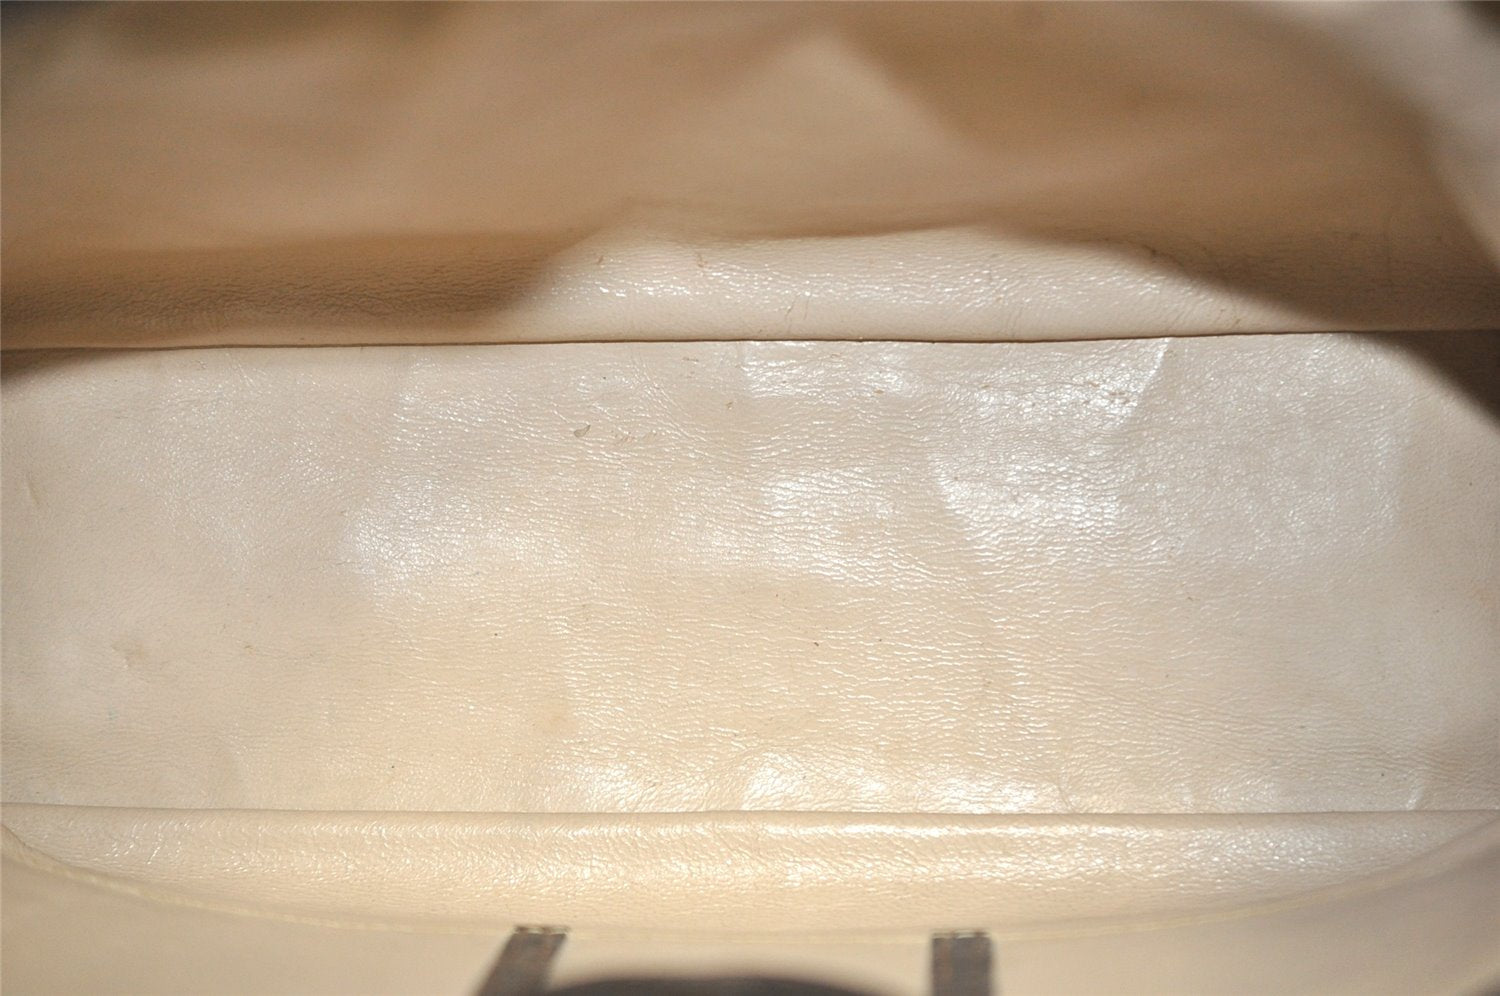 Authentic GUCCI Vintage Shoulder Bag Purse Leather Brown 0144K